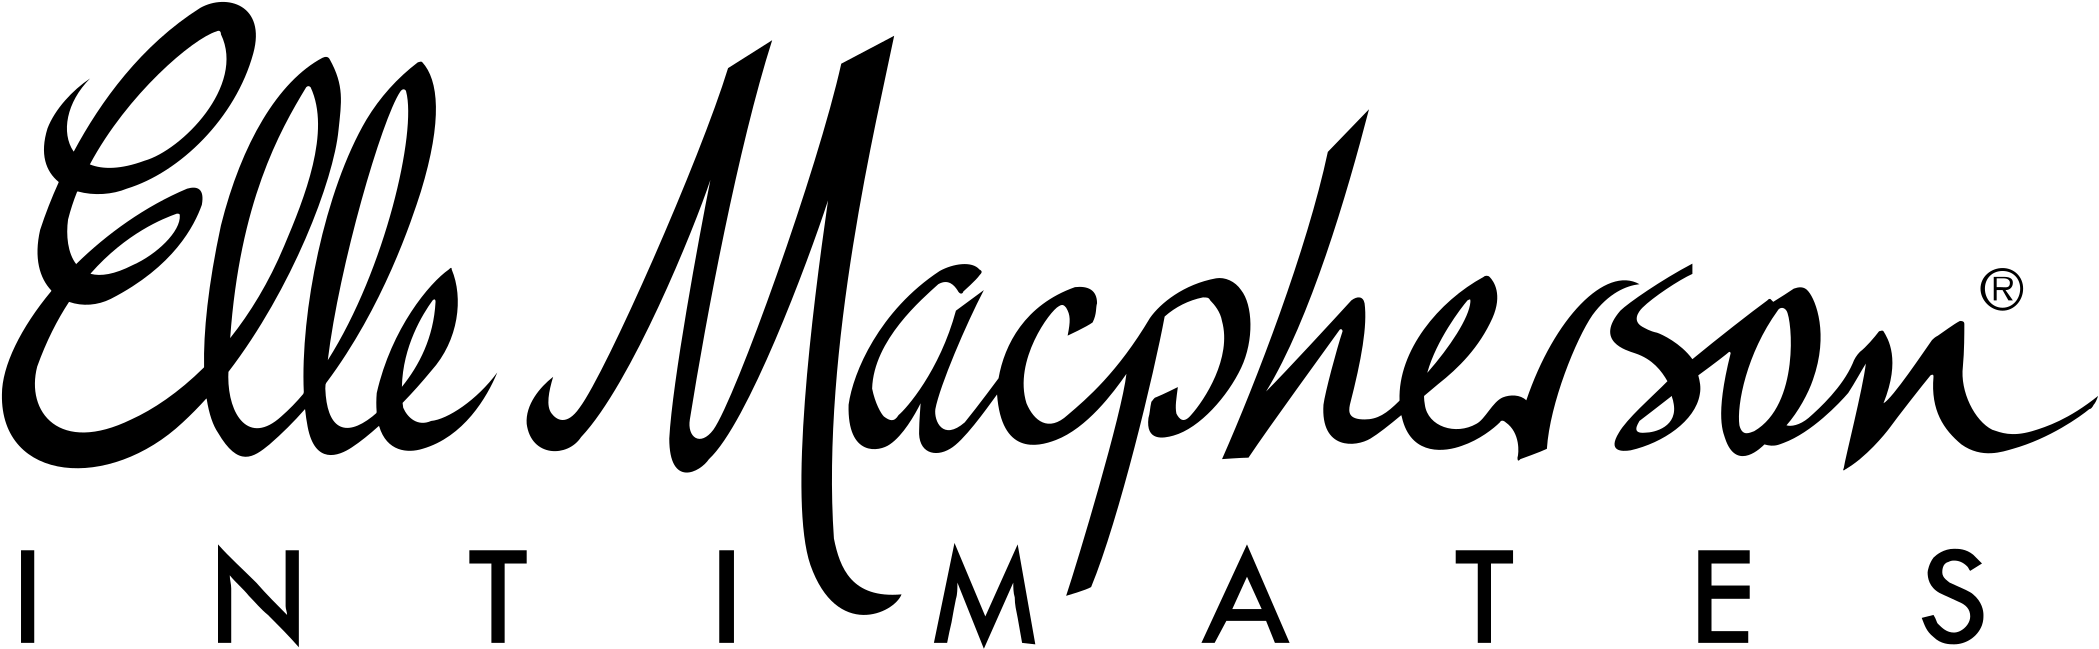 Elle Macpherson Logo Png Transparent - Elle Macpherson Clipart (2400x2400), Png Download